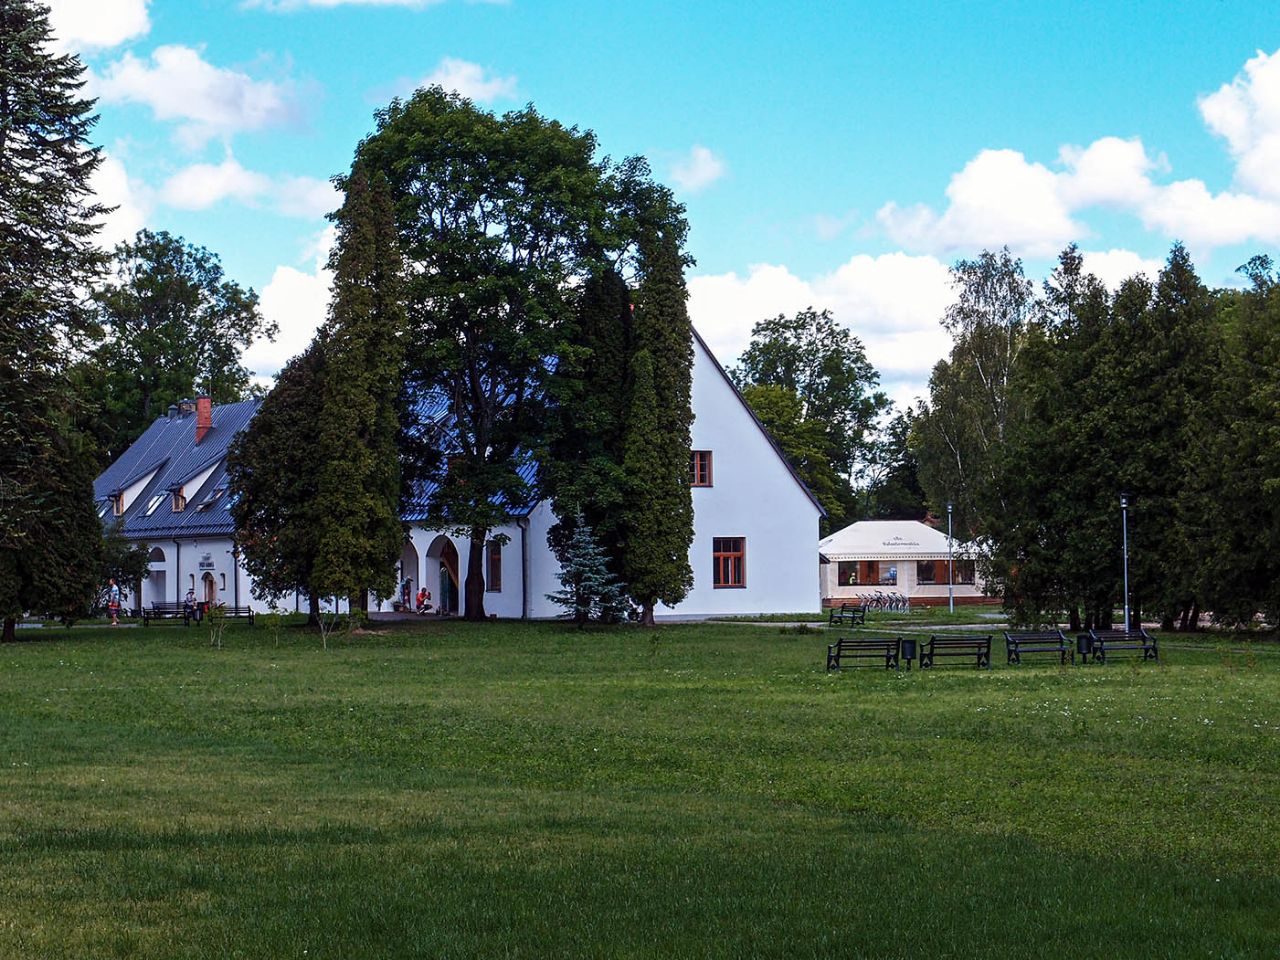 Сигулдский замок Сигулда, Латвия